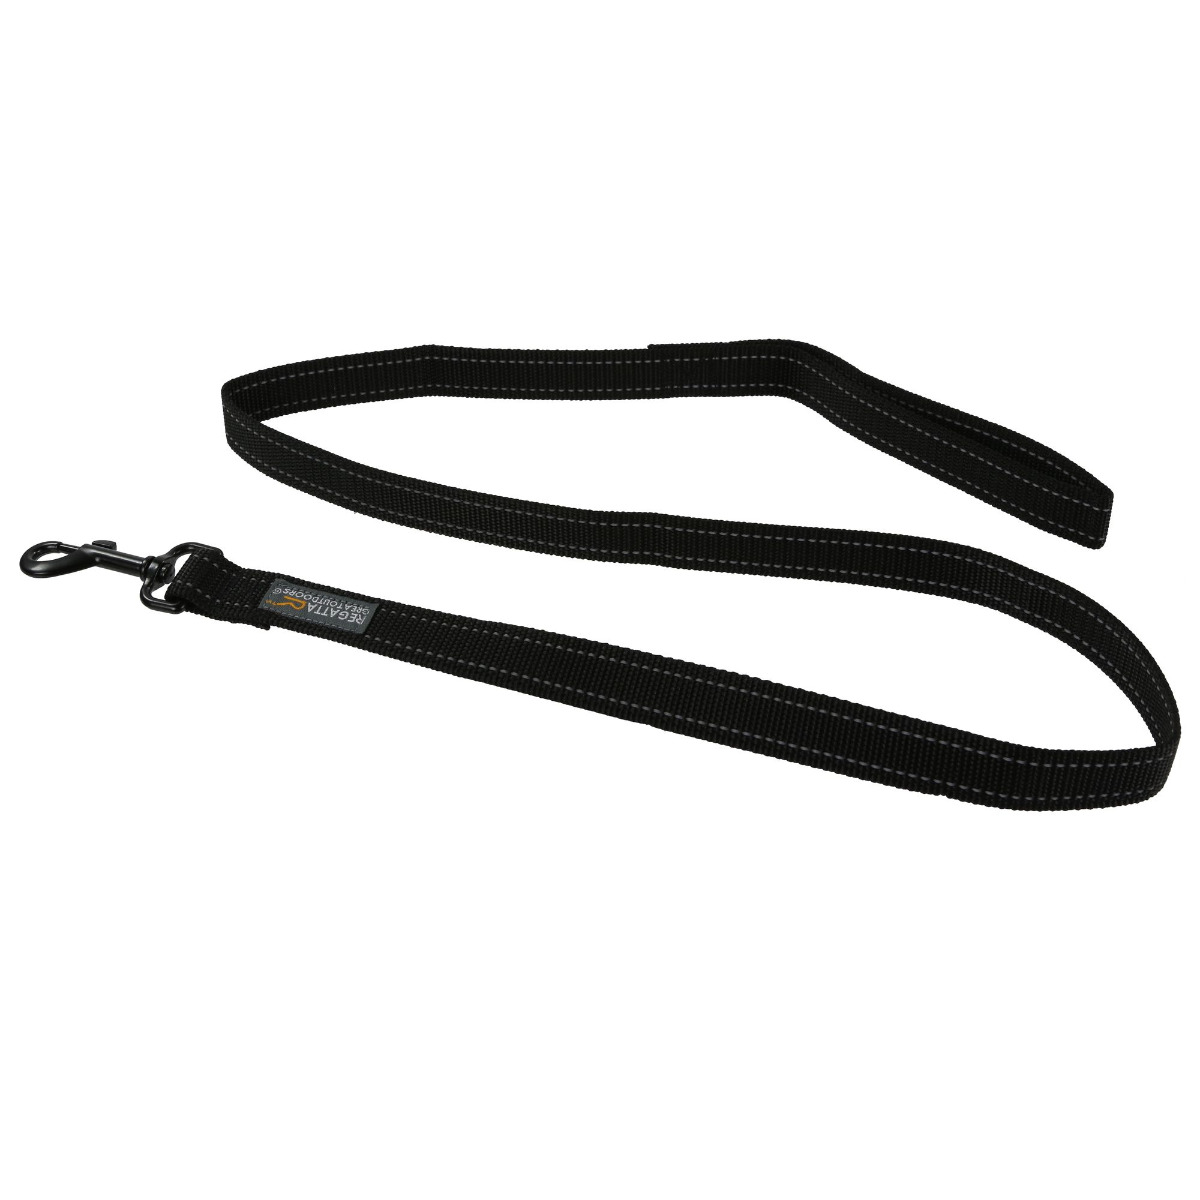 Regatta Reflective Dog Lead - Black - 120cm